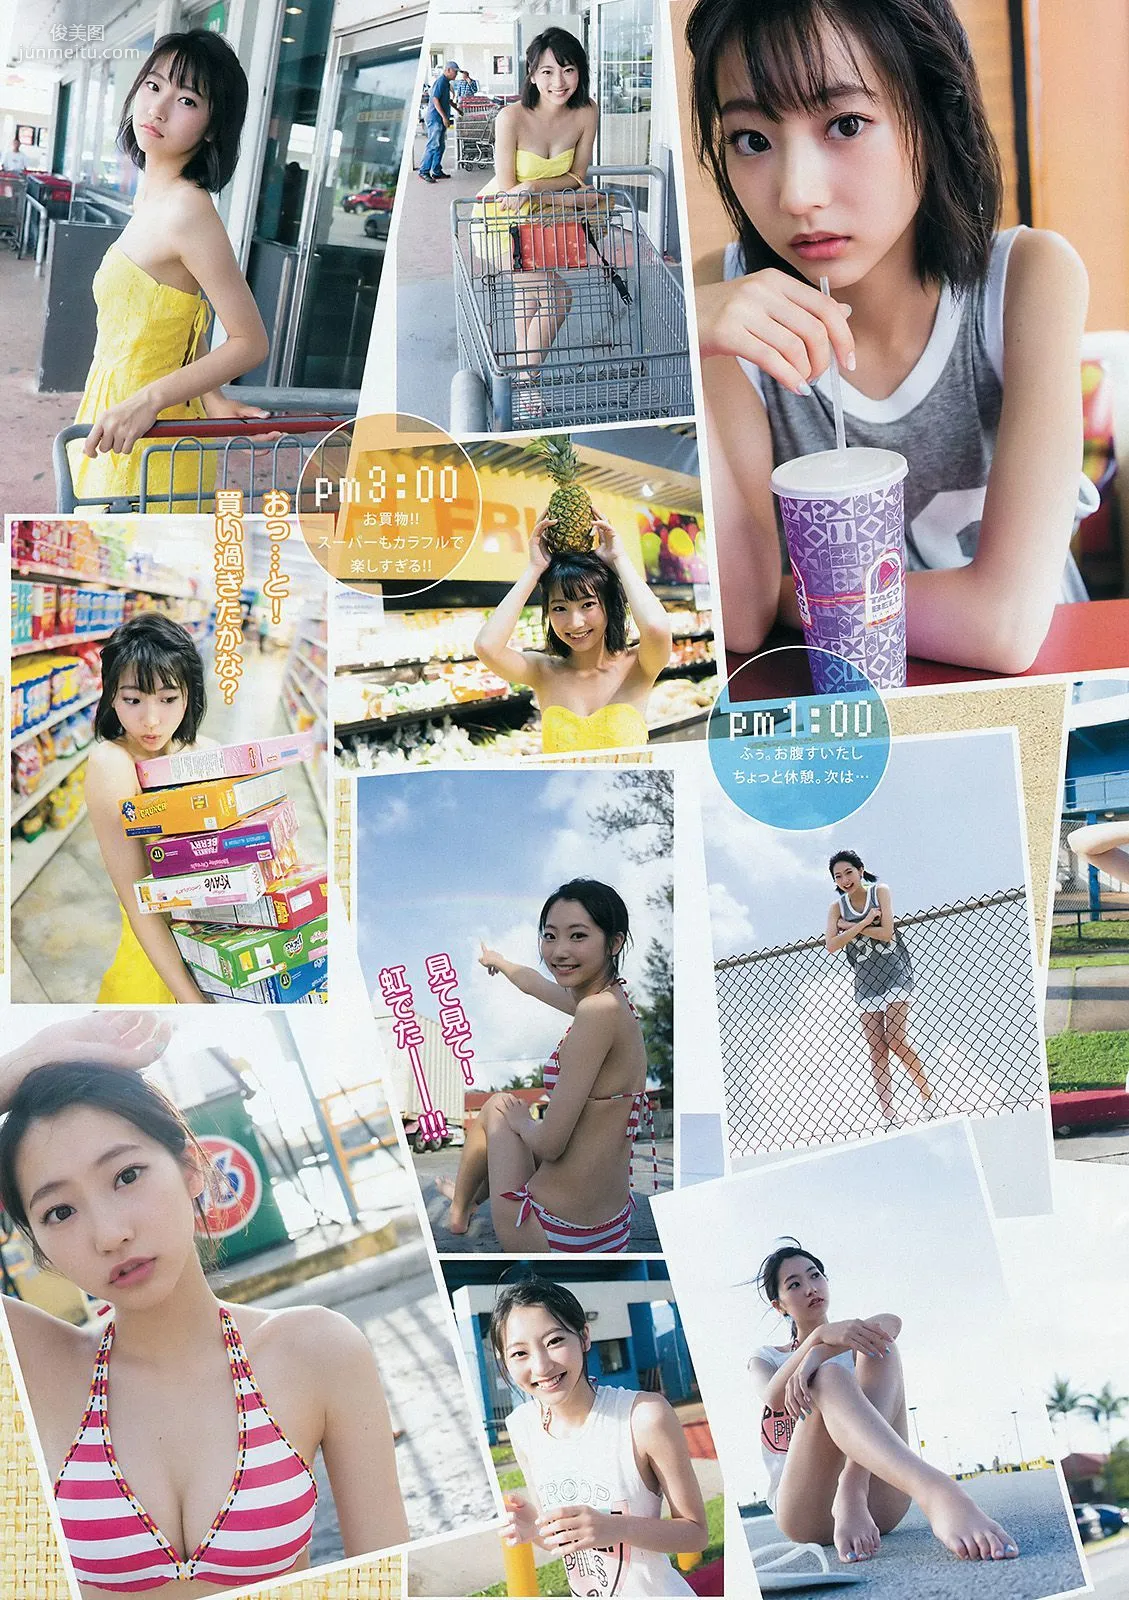 武田玲奈《RENA'S HOLIDAY... GUAM SPECIAL ver.》 [Weekly Young Jump] 2015年No.30 写真杂志11